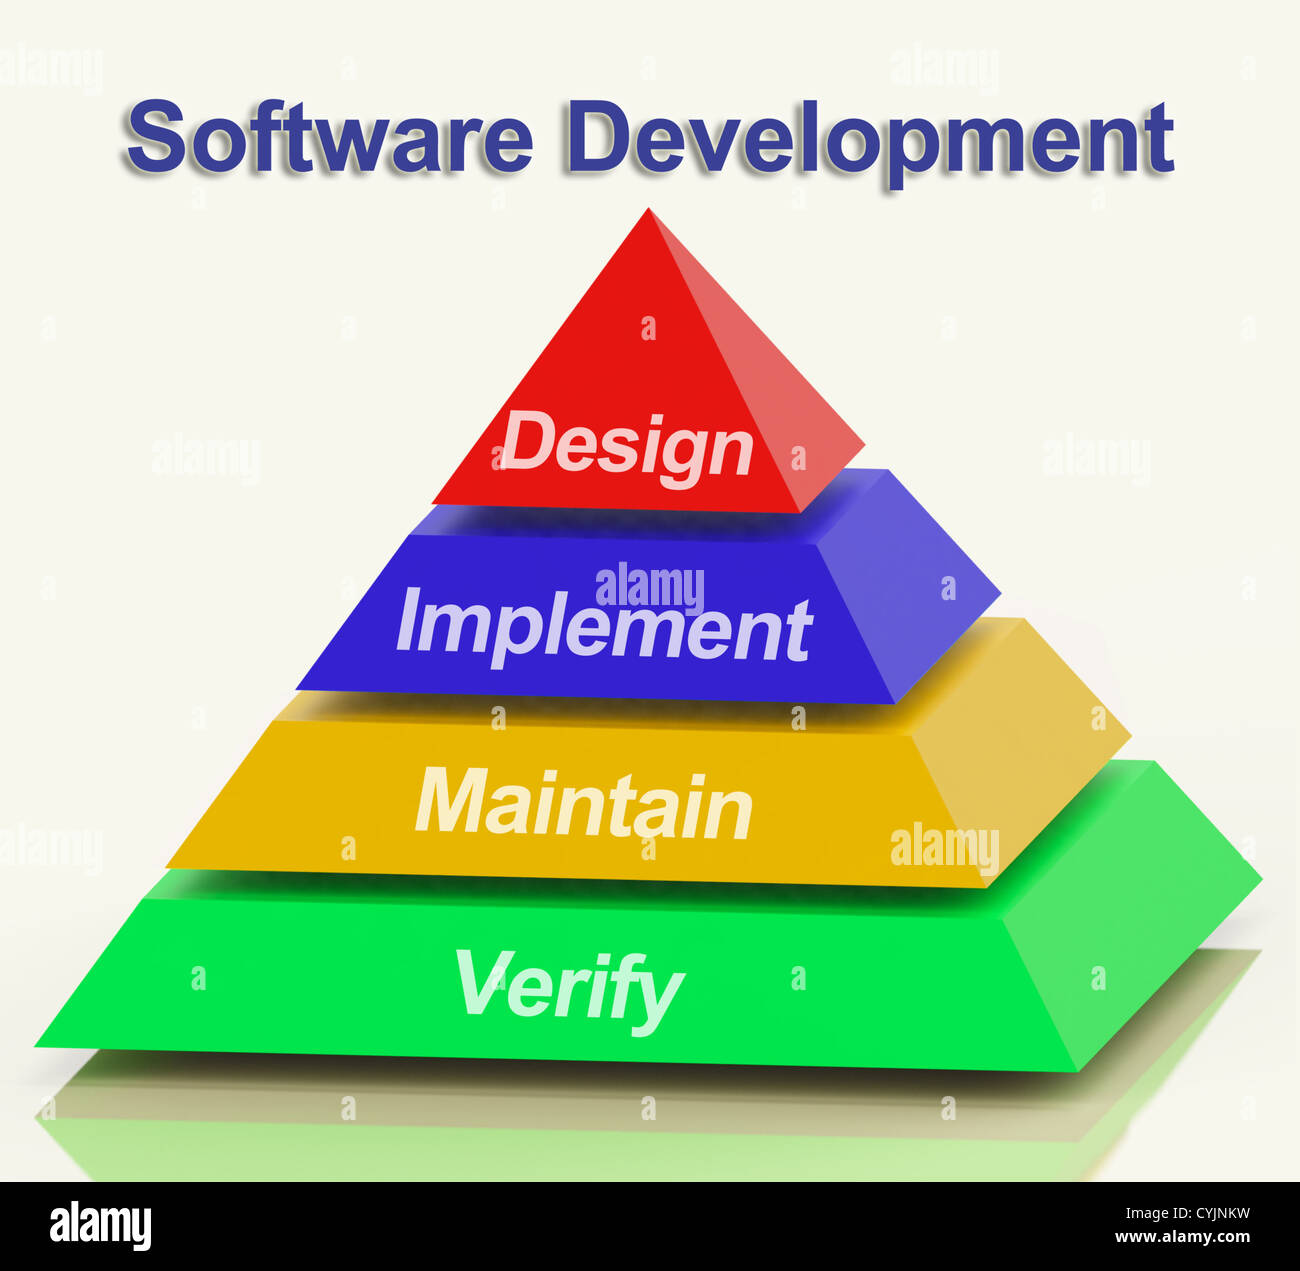 Sviluppo Software Piramide con Design implementare mantenere e verificare Foto Stock